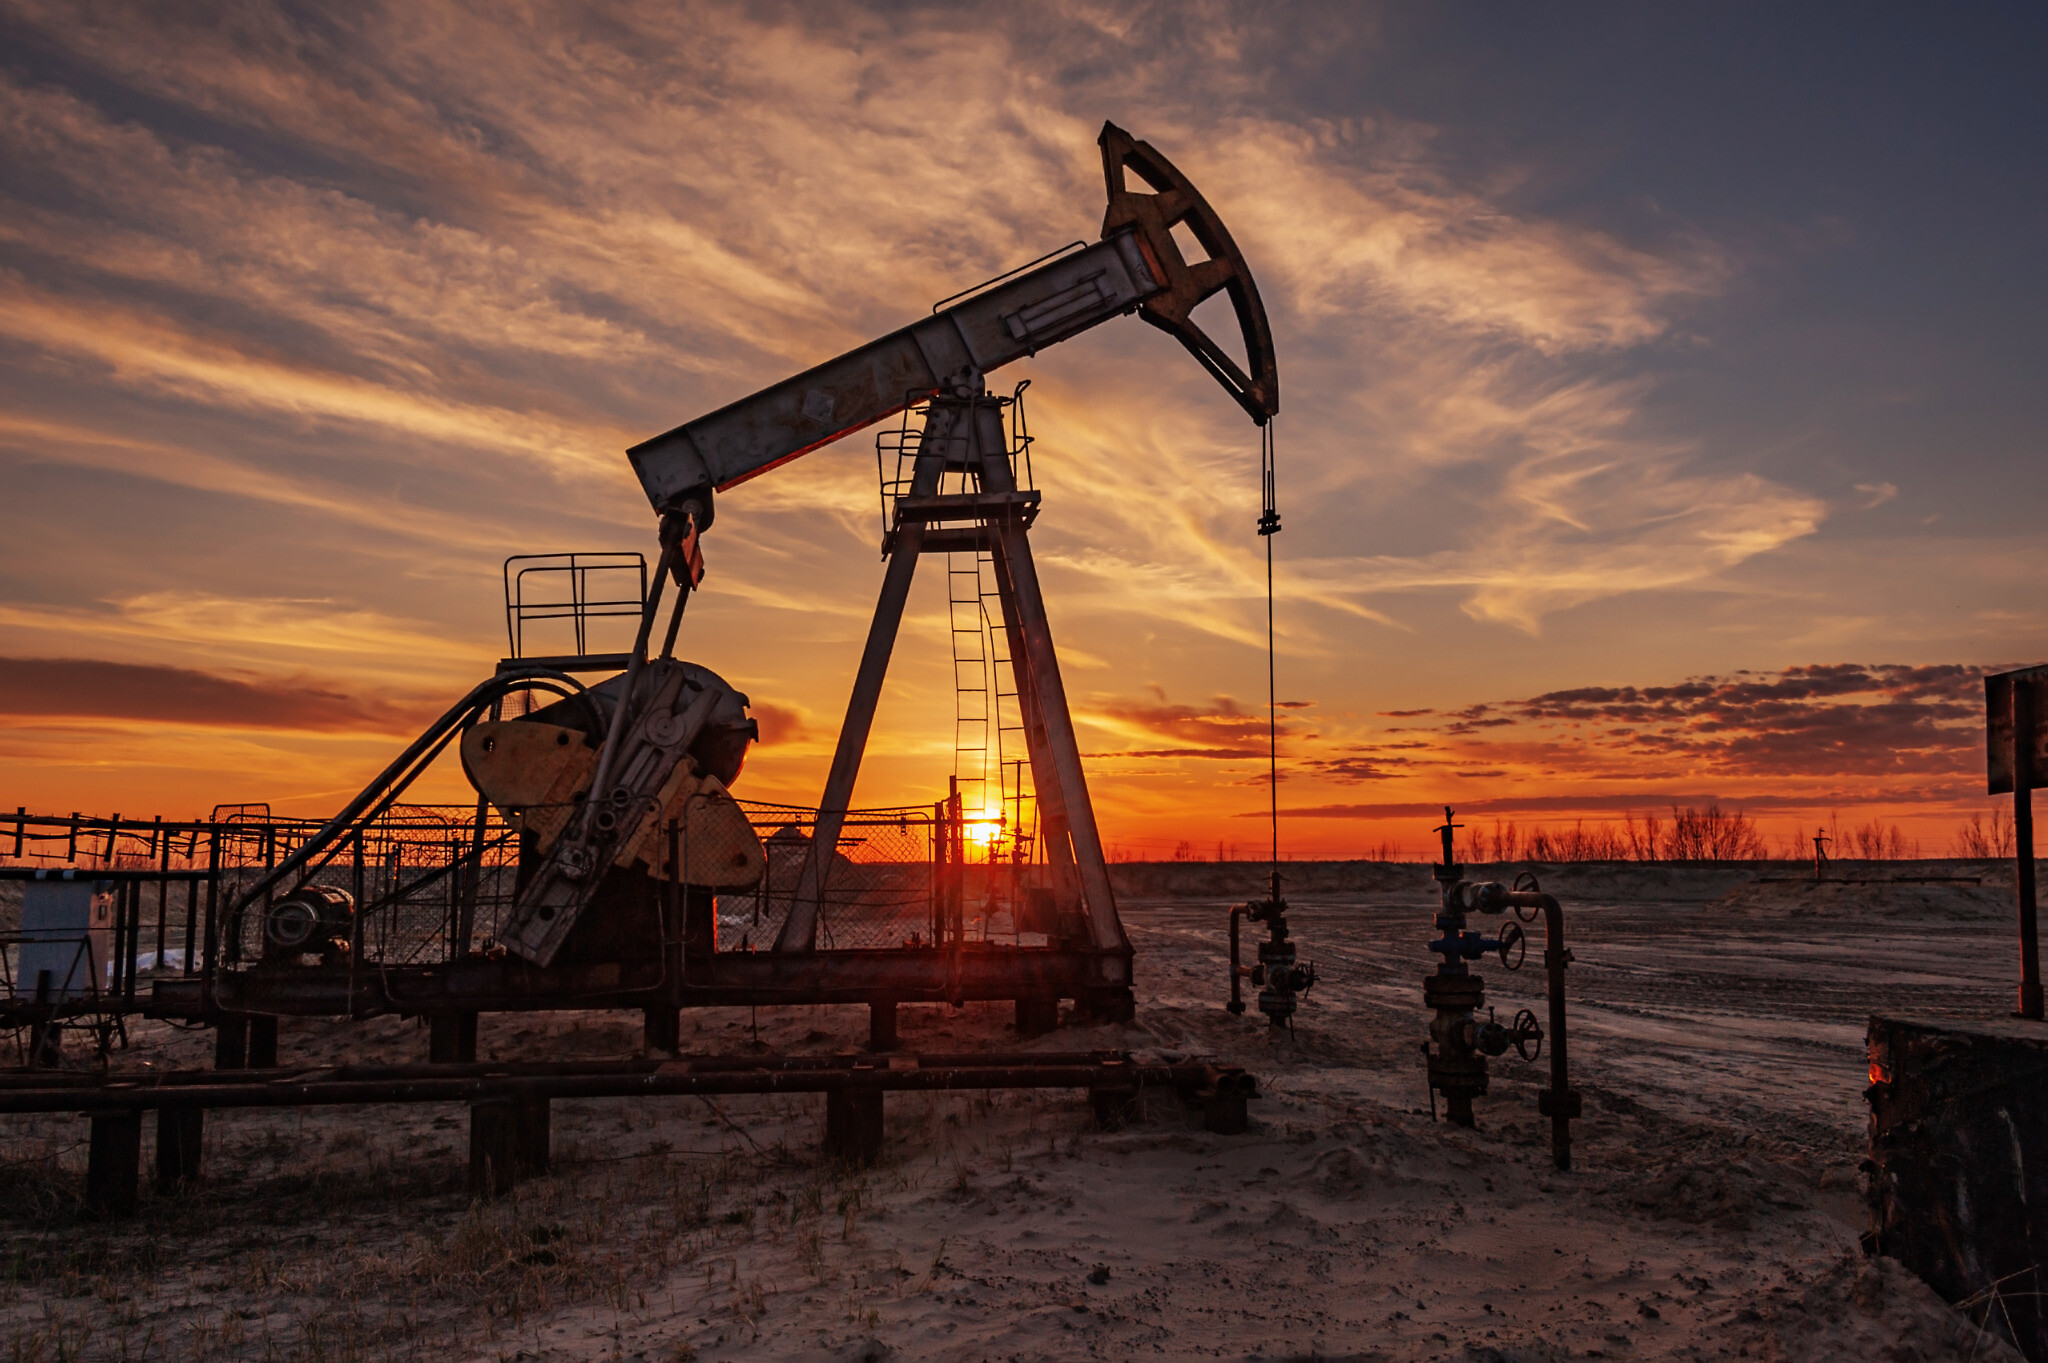 ABD’de petrol sondaj kulesi sayısı arttı